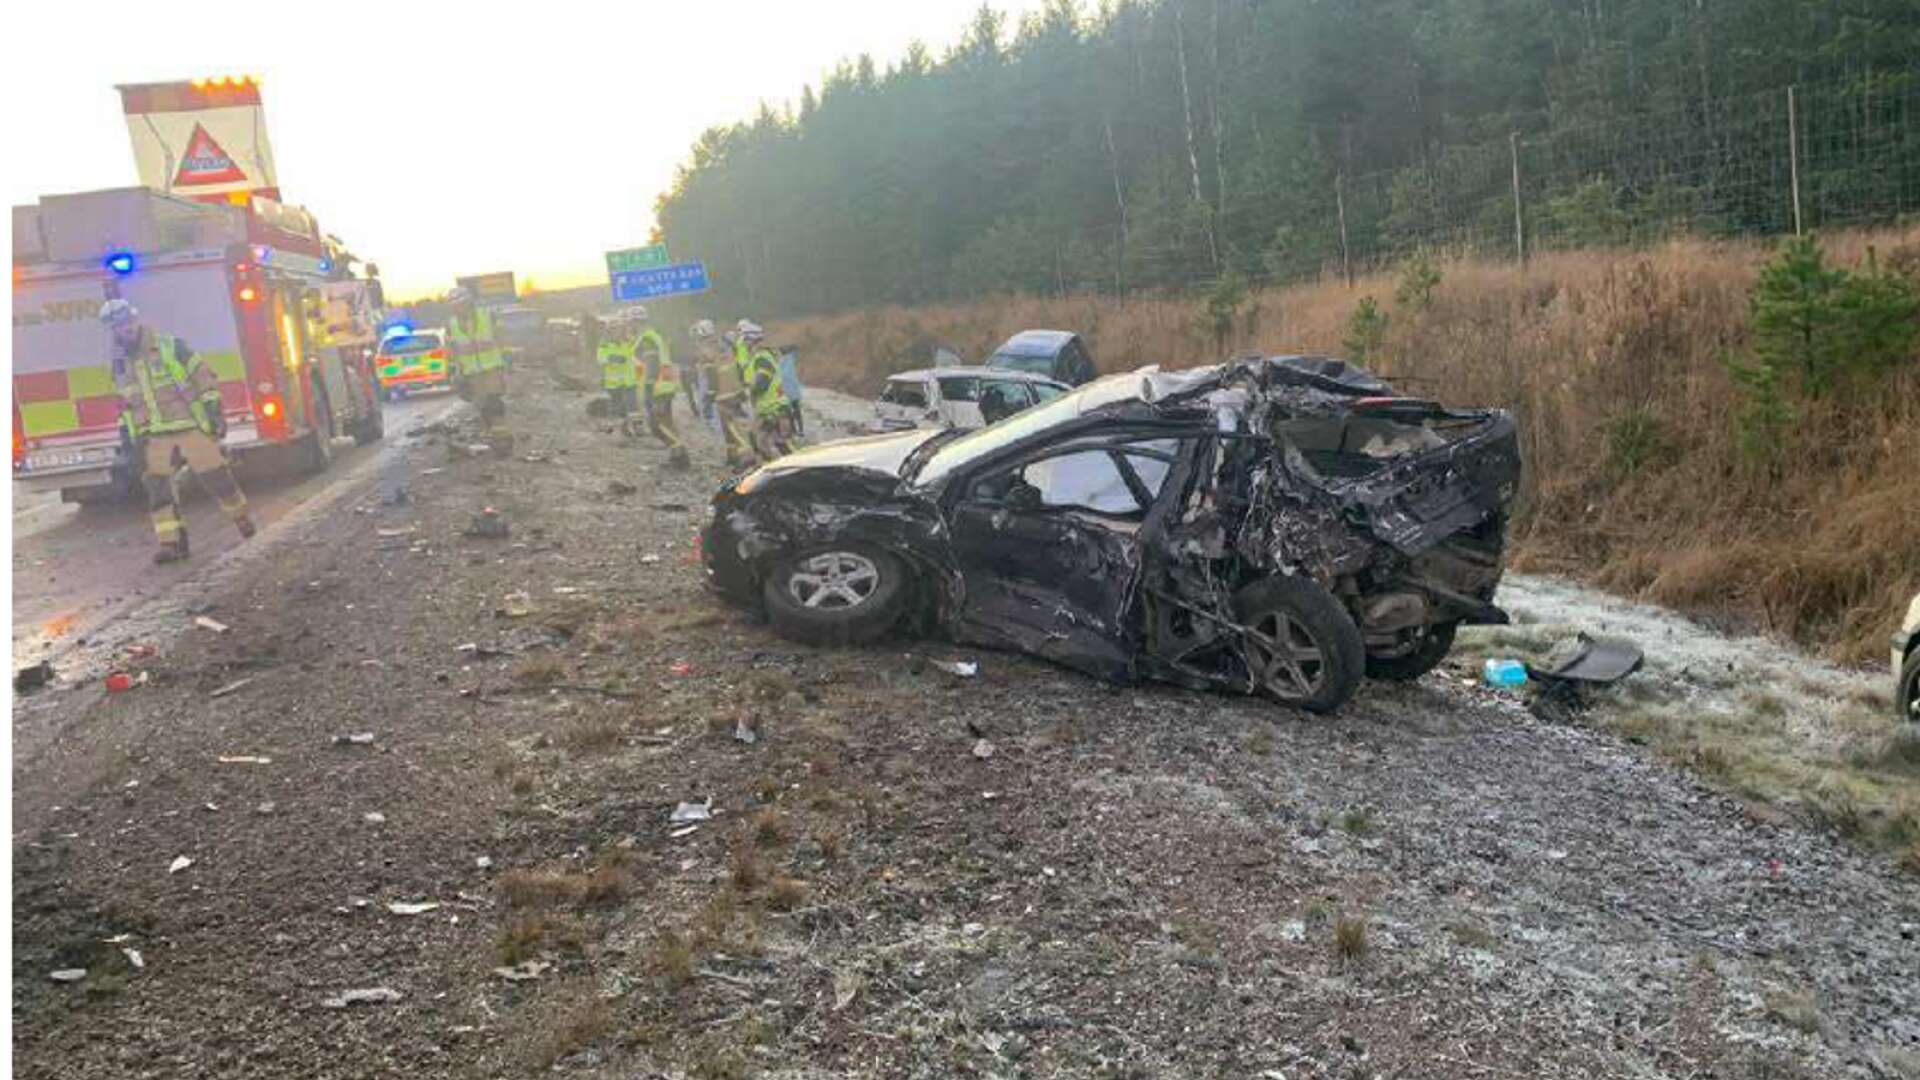 Olyckan skedde på E18 i närheten av Skattkärr utanför Karlstad.